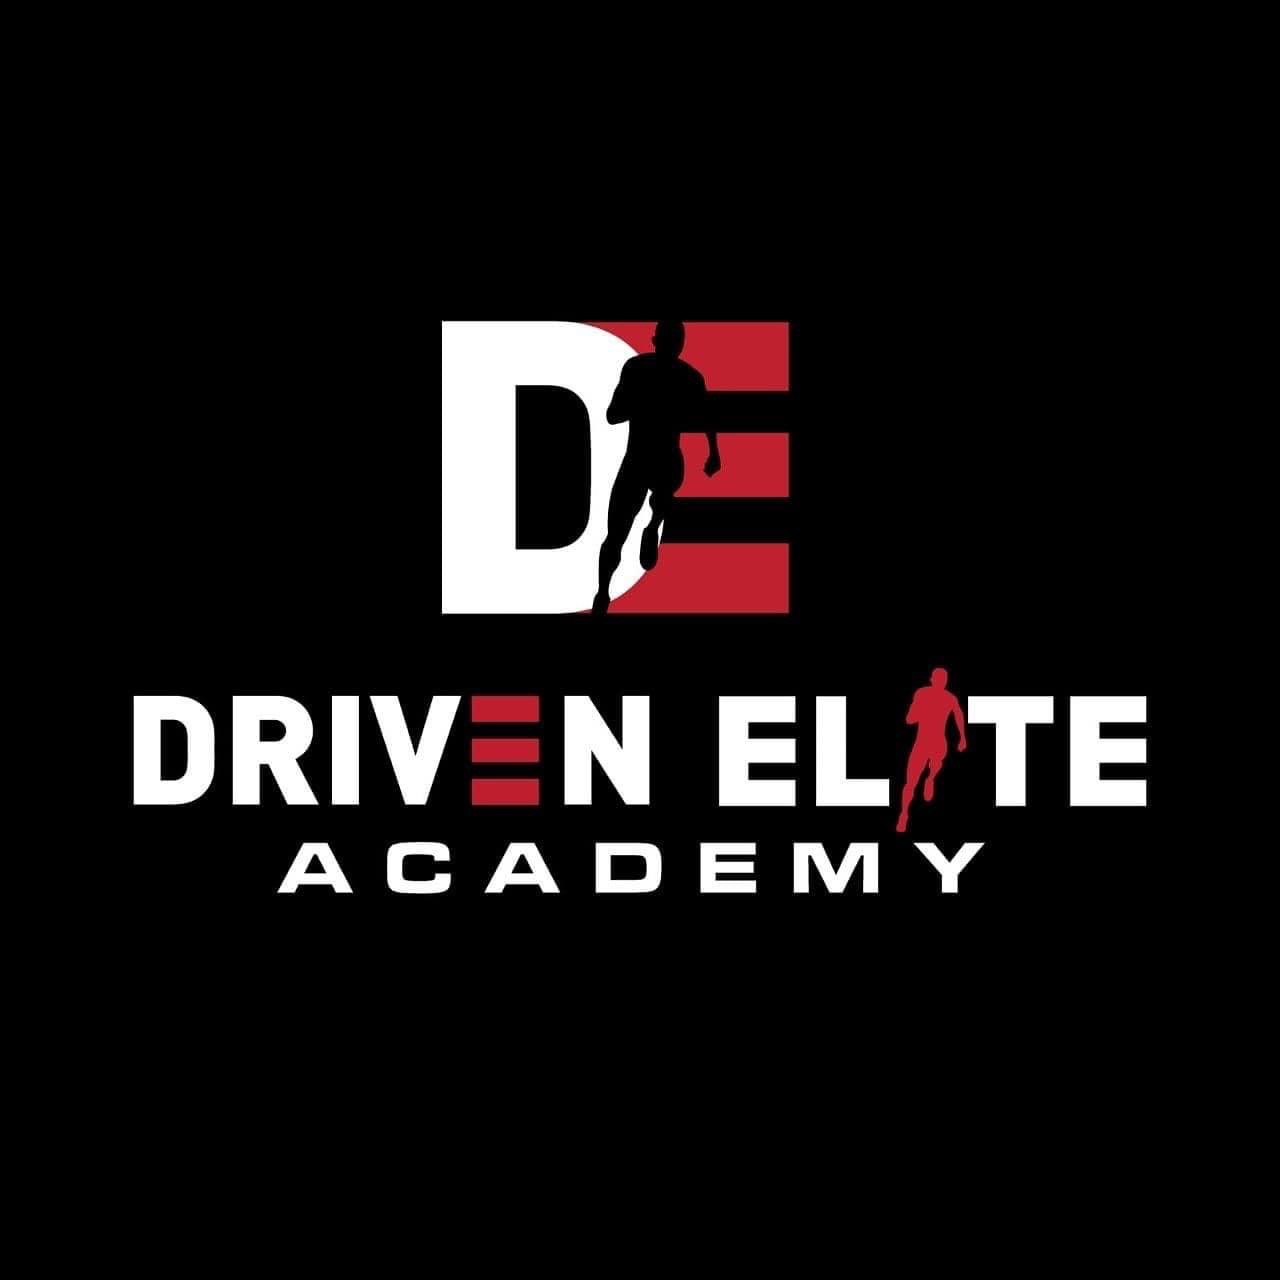 Driven Elite Academy